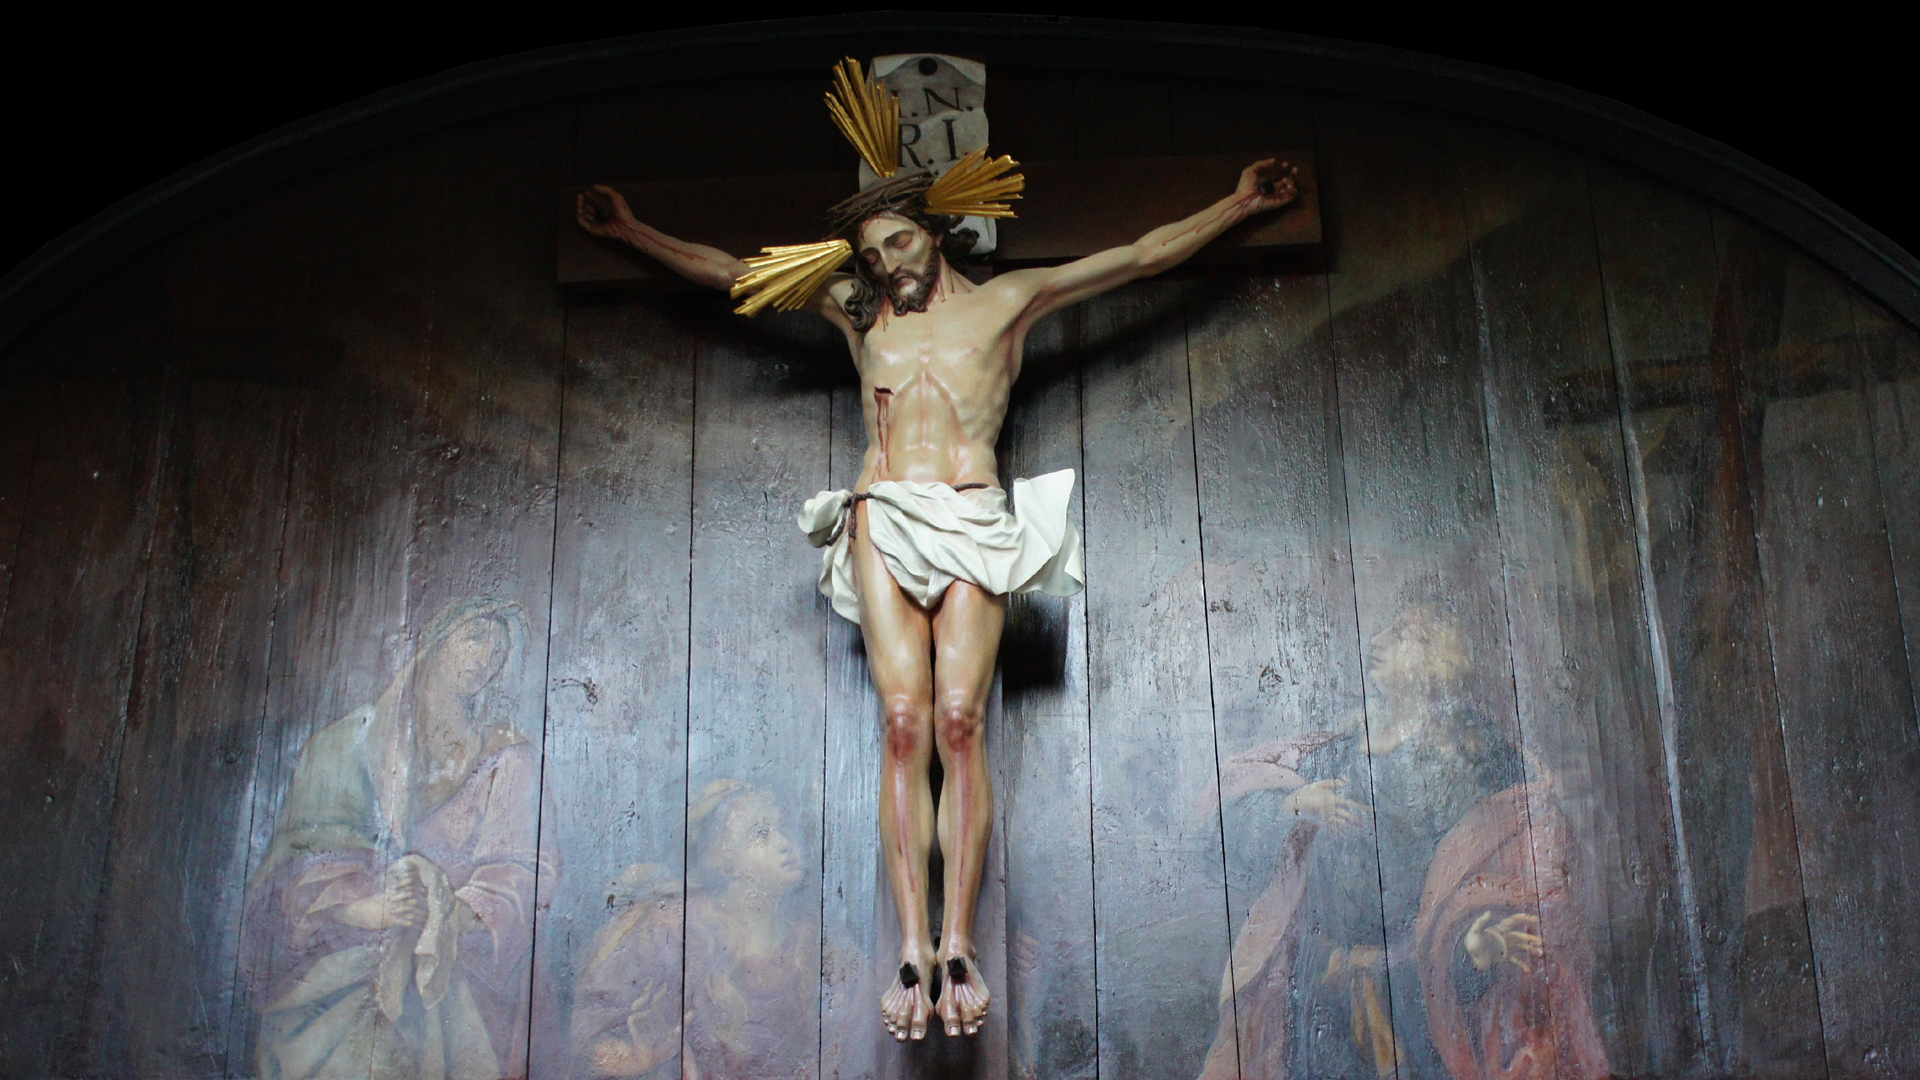 Jesus 60: Jesus, Teil des Dreeinigen Gottes, stirbt den Foltertod am Kreuz